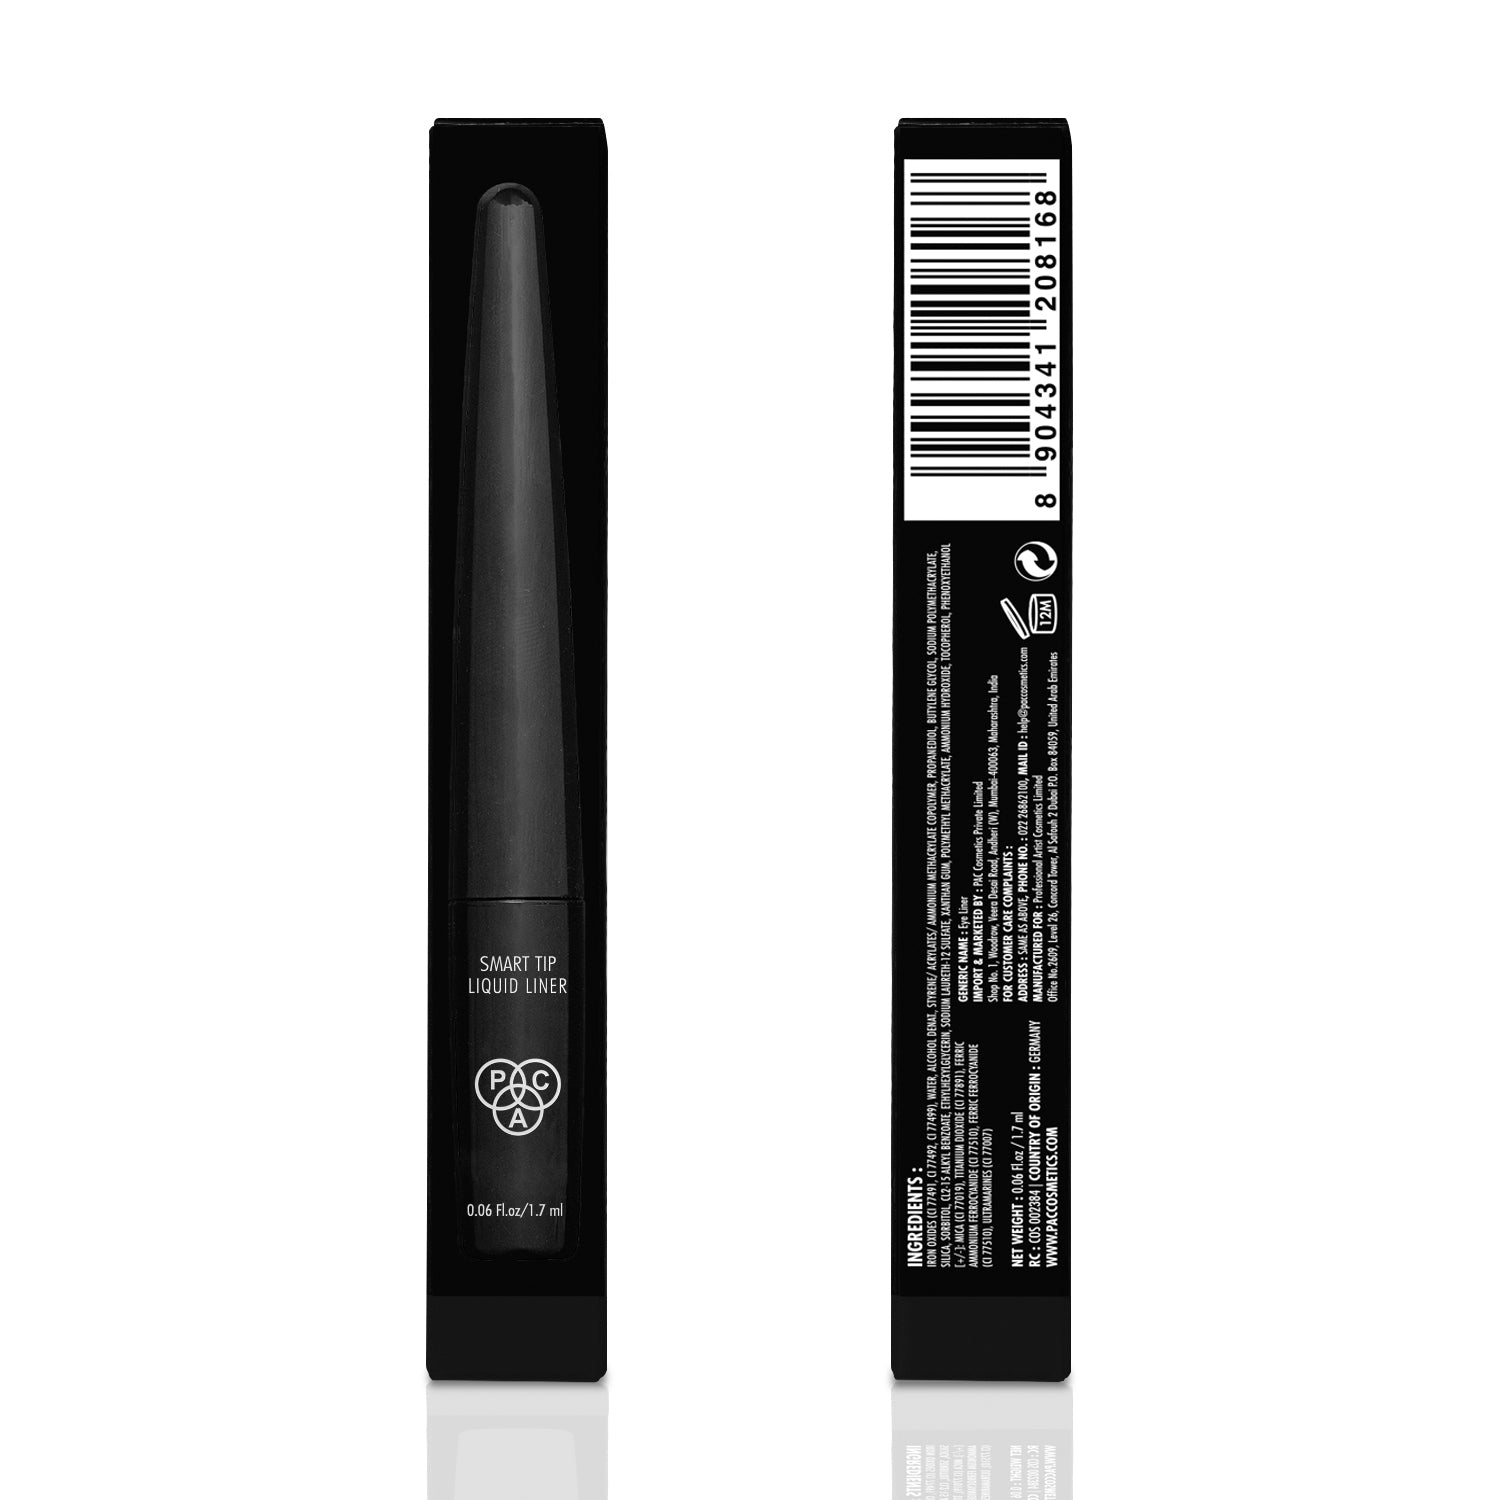 PAC Cosmetics Smart Tip Liquid Liner (1.7 ml) #Color_Black